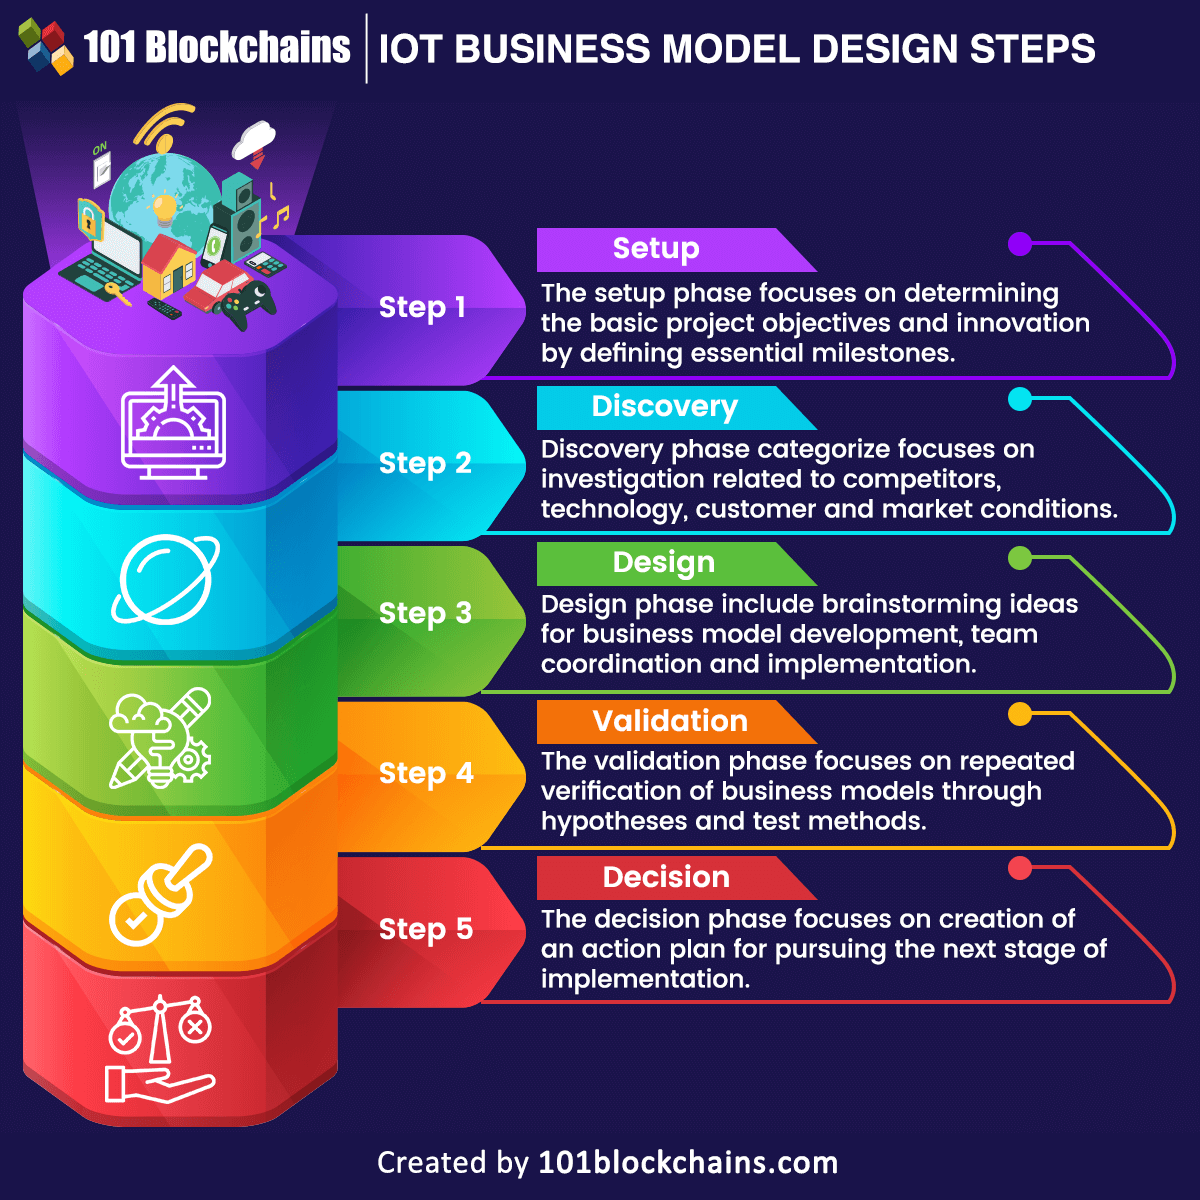 IoT business models design steps